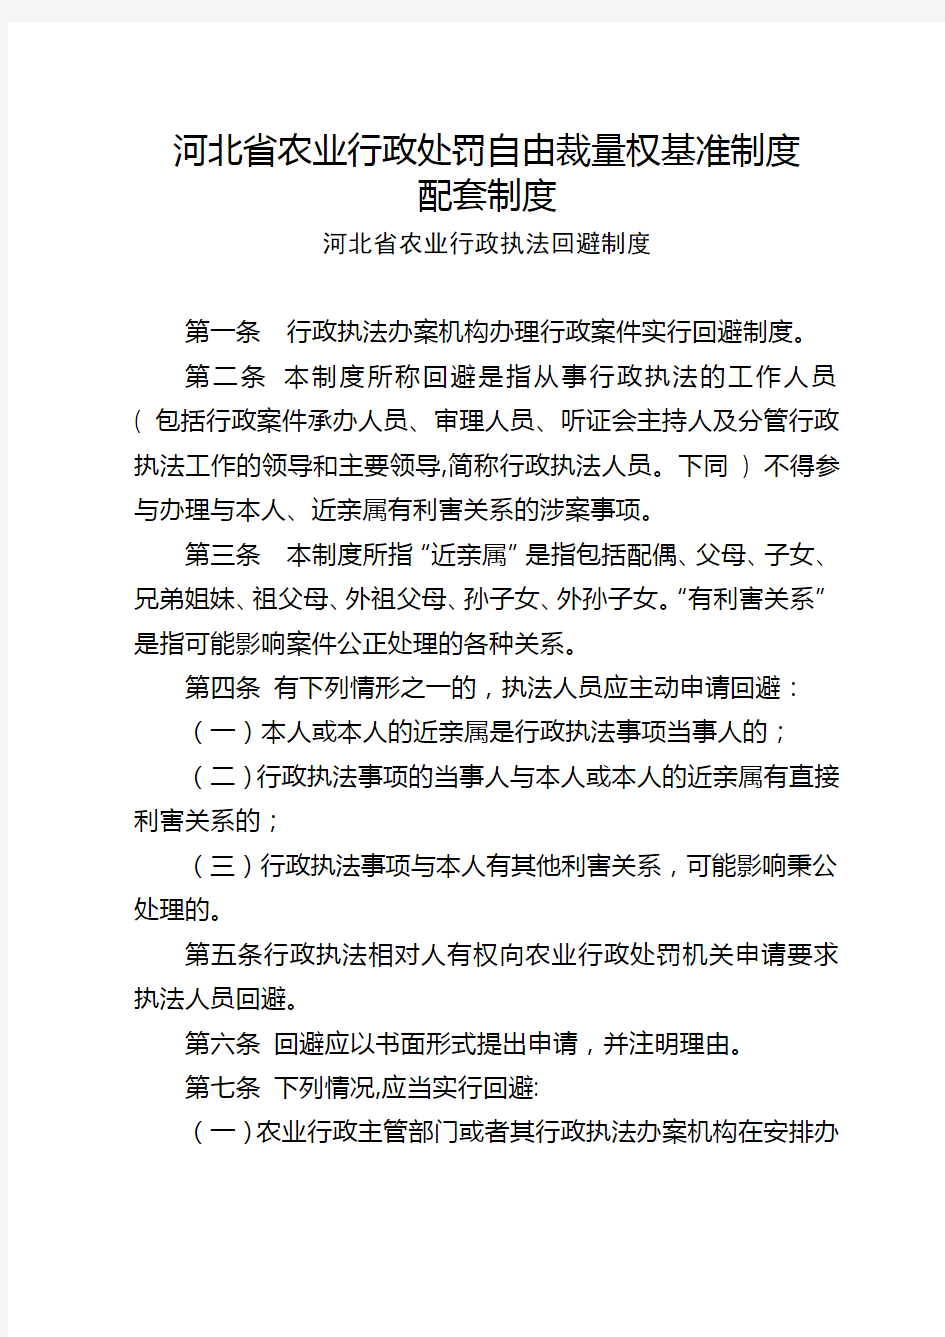 河北省农业行政处罚自由裁量权基准制度配套制度【模板】